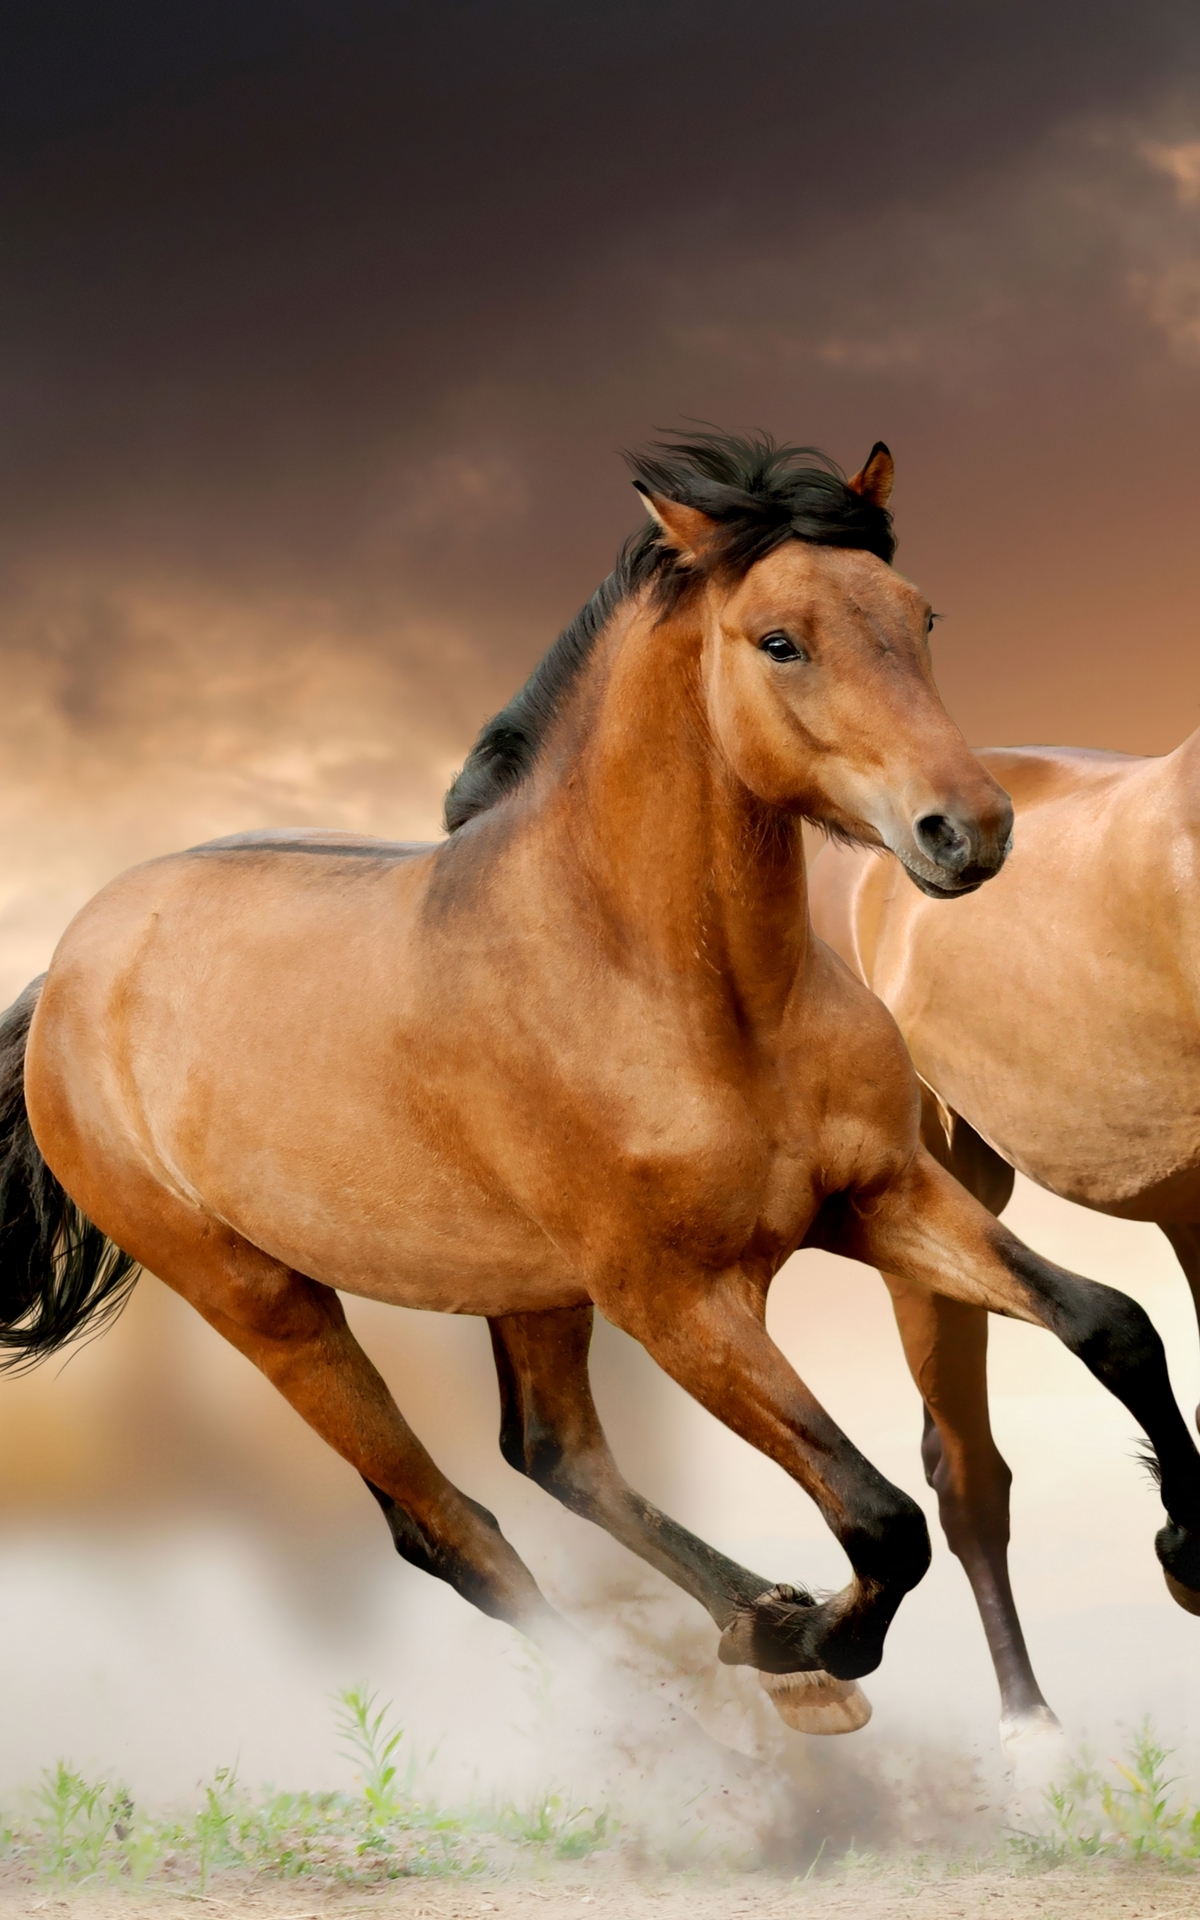 Image: Horse, mane, running, focus, blur